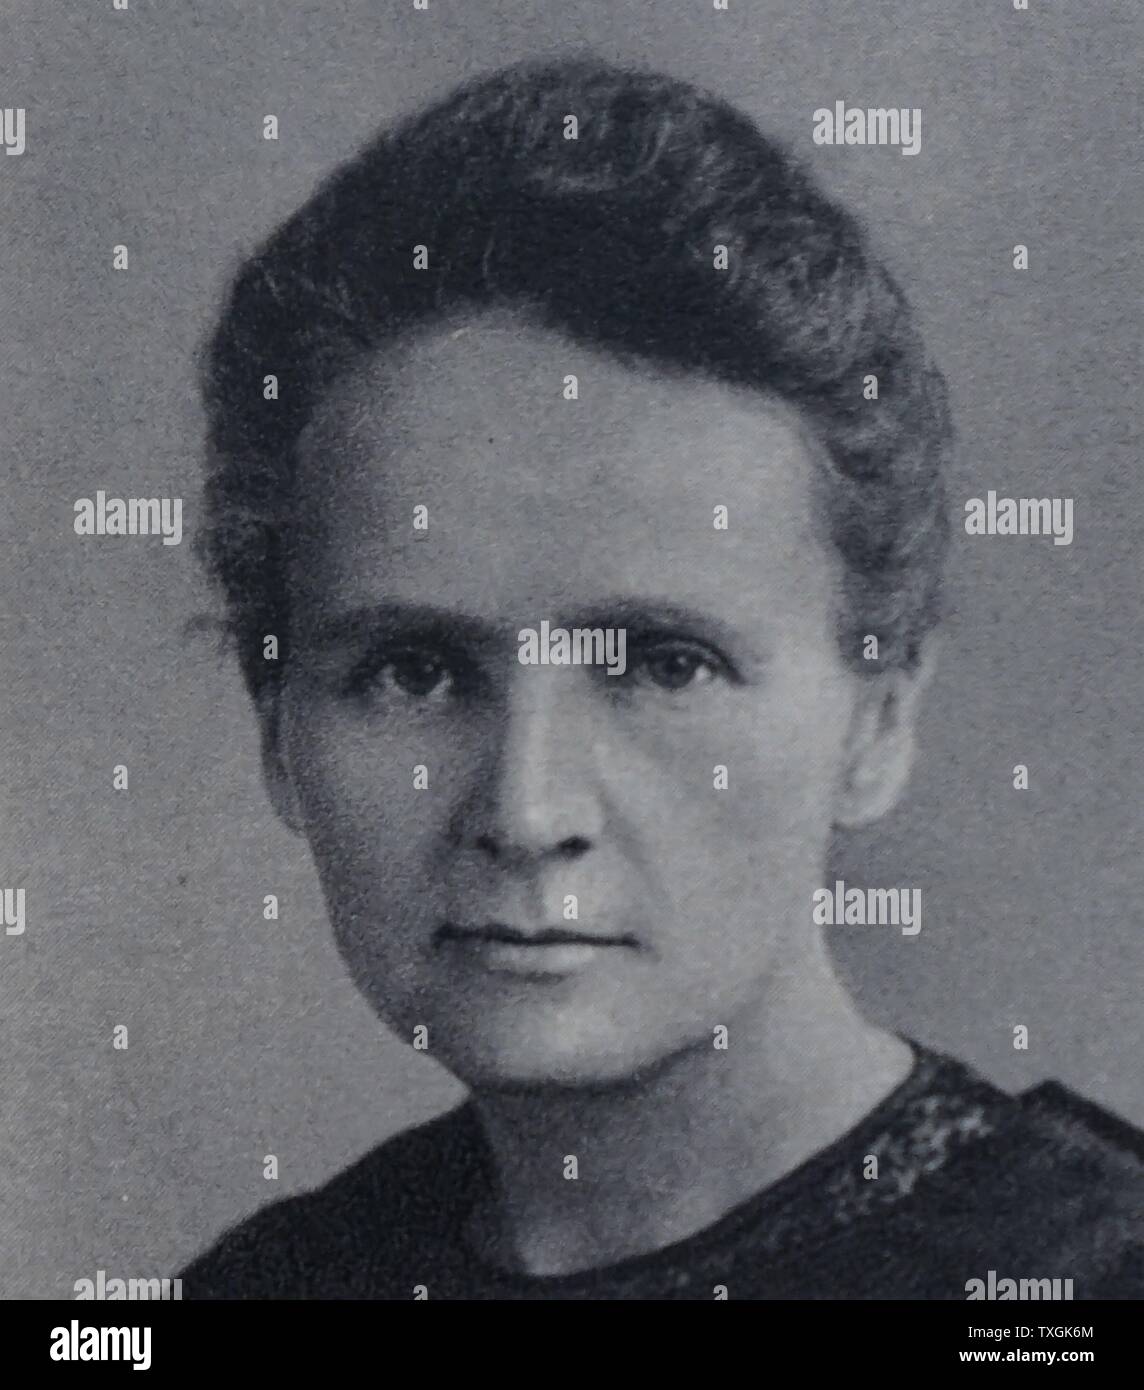 Fotodruck von Marie Curie (1867-1934), polnische und eingebürgert Französisch Physiker und Chemiker, wegweisende durchgeführt auf Radioaktivität Forschung. Vom 20. Jahrhundert Stockfoto